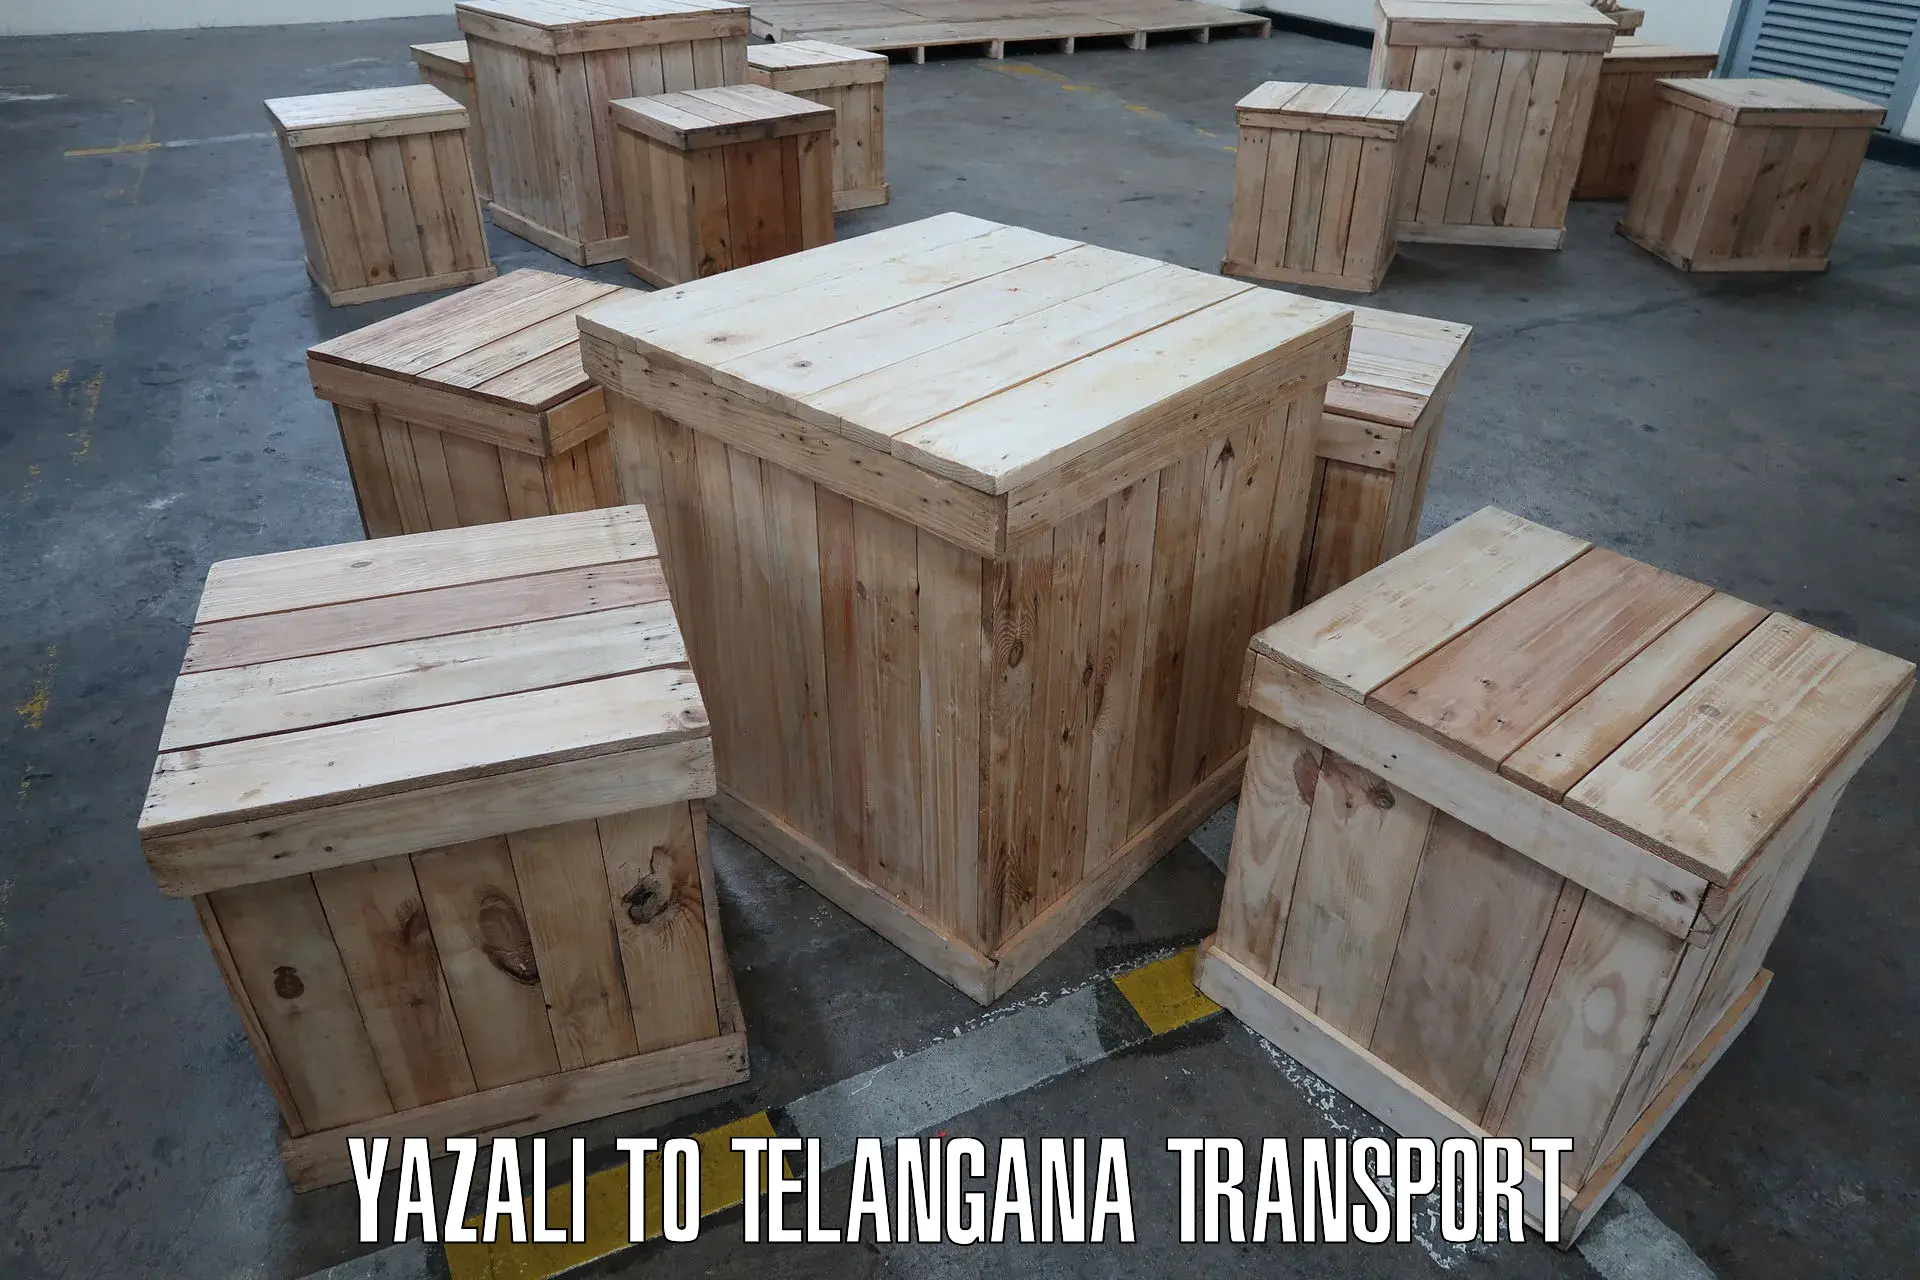 Daily parcel service transport Yazali to Odela